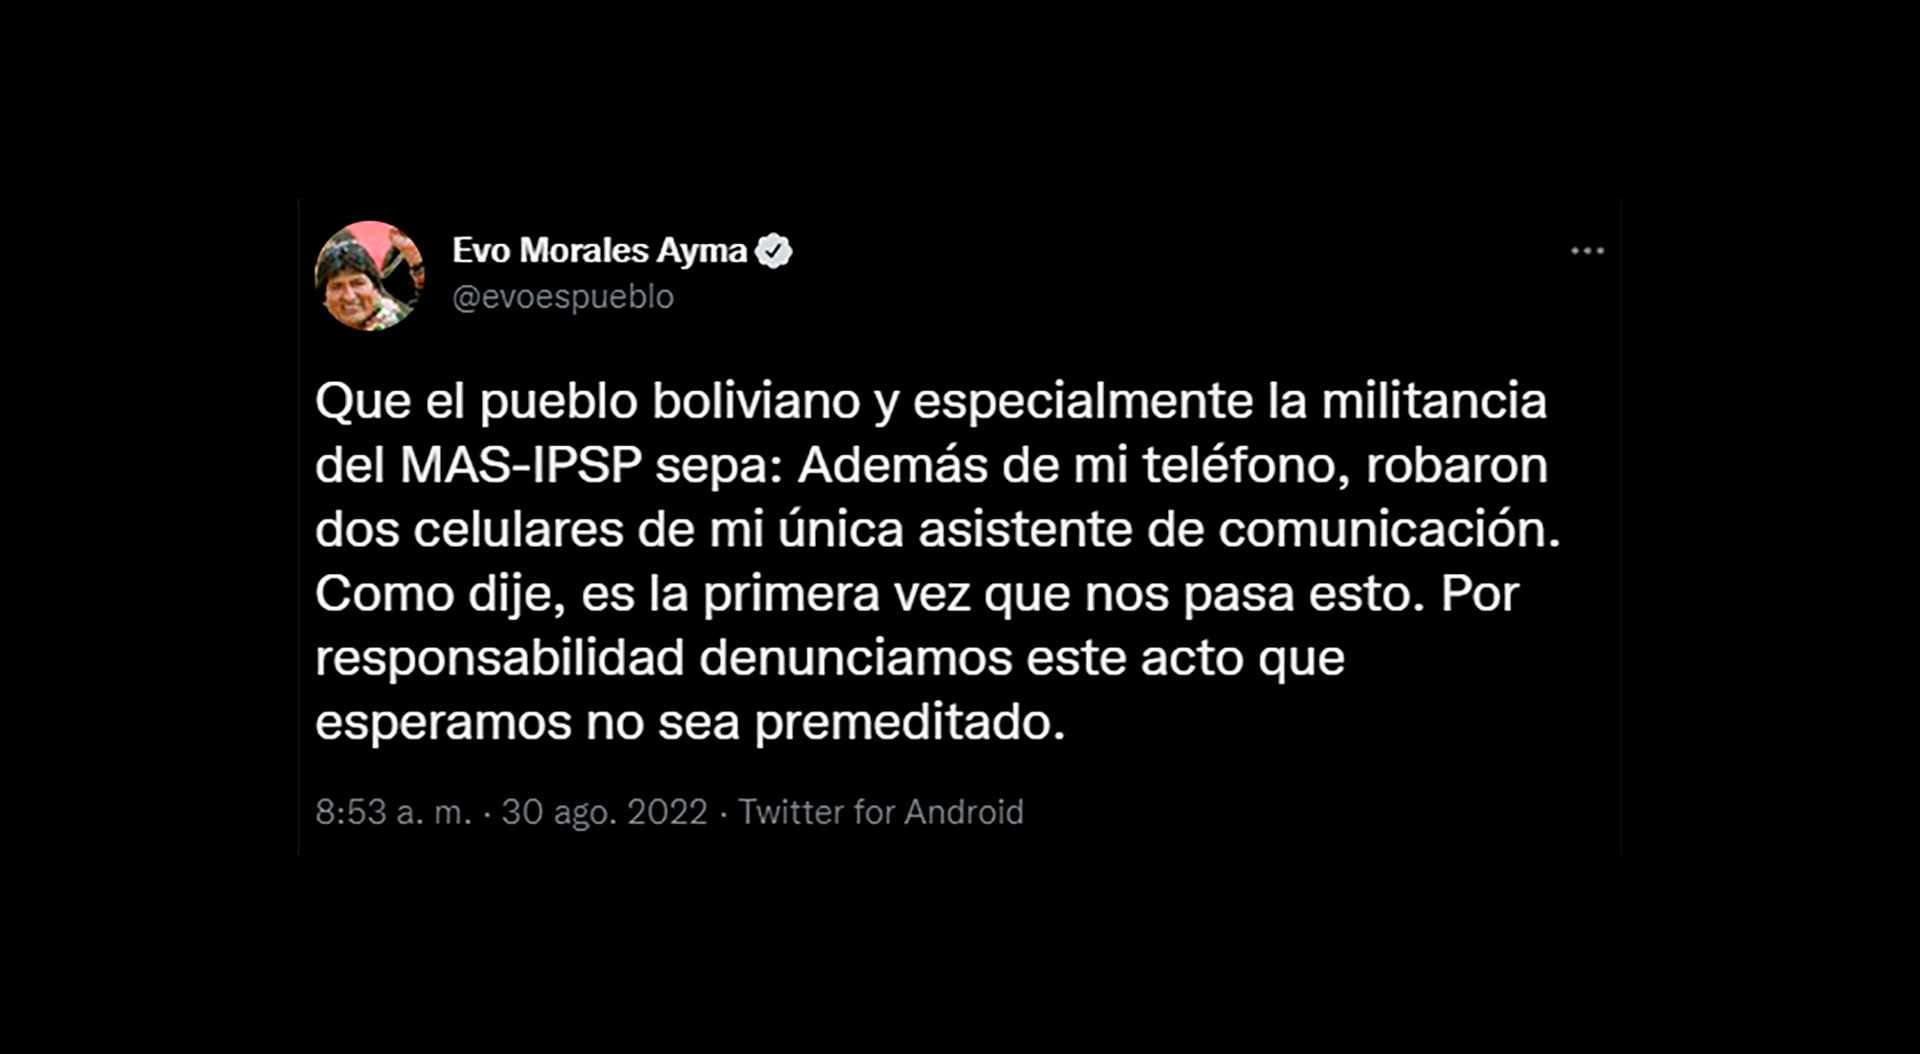 Die Nachricht von Evo Morales auf Twitter